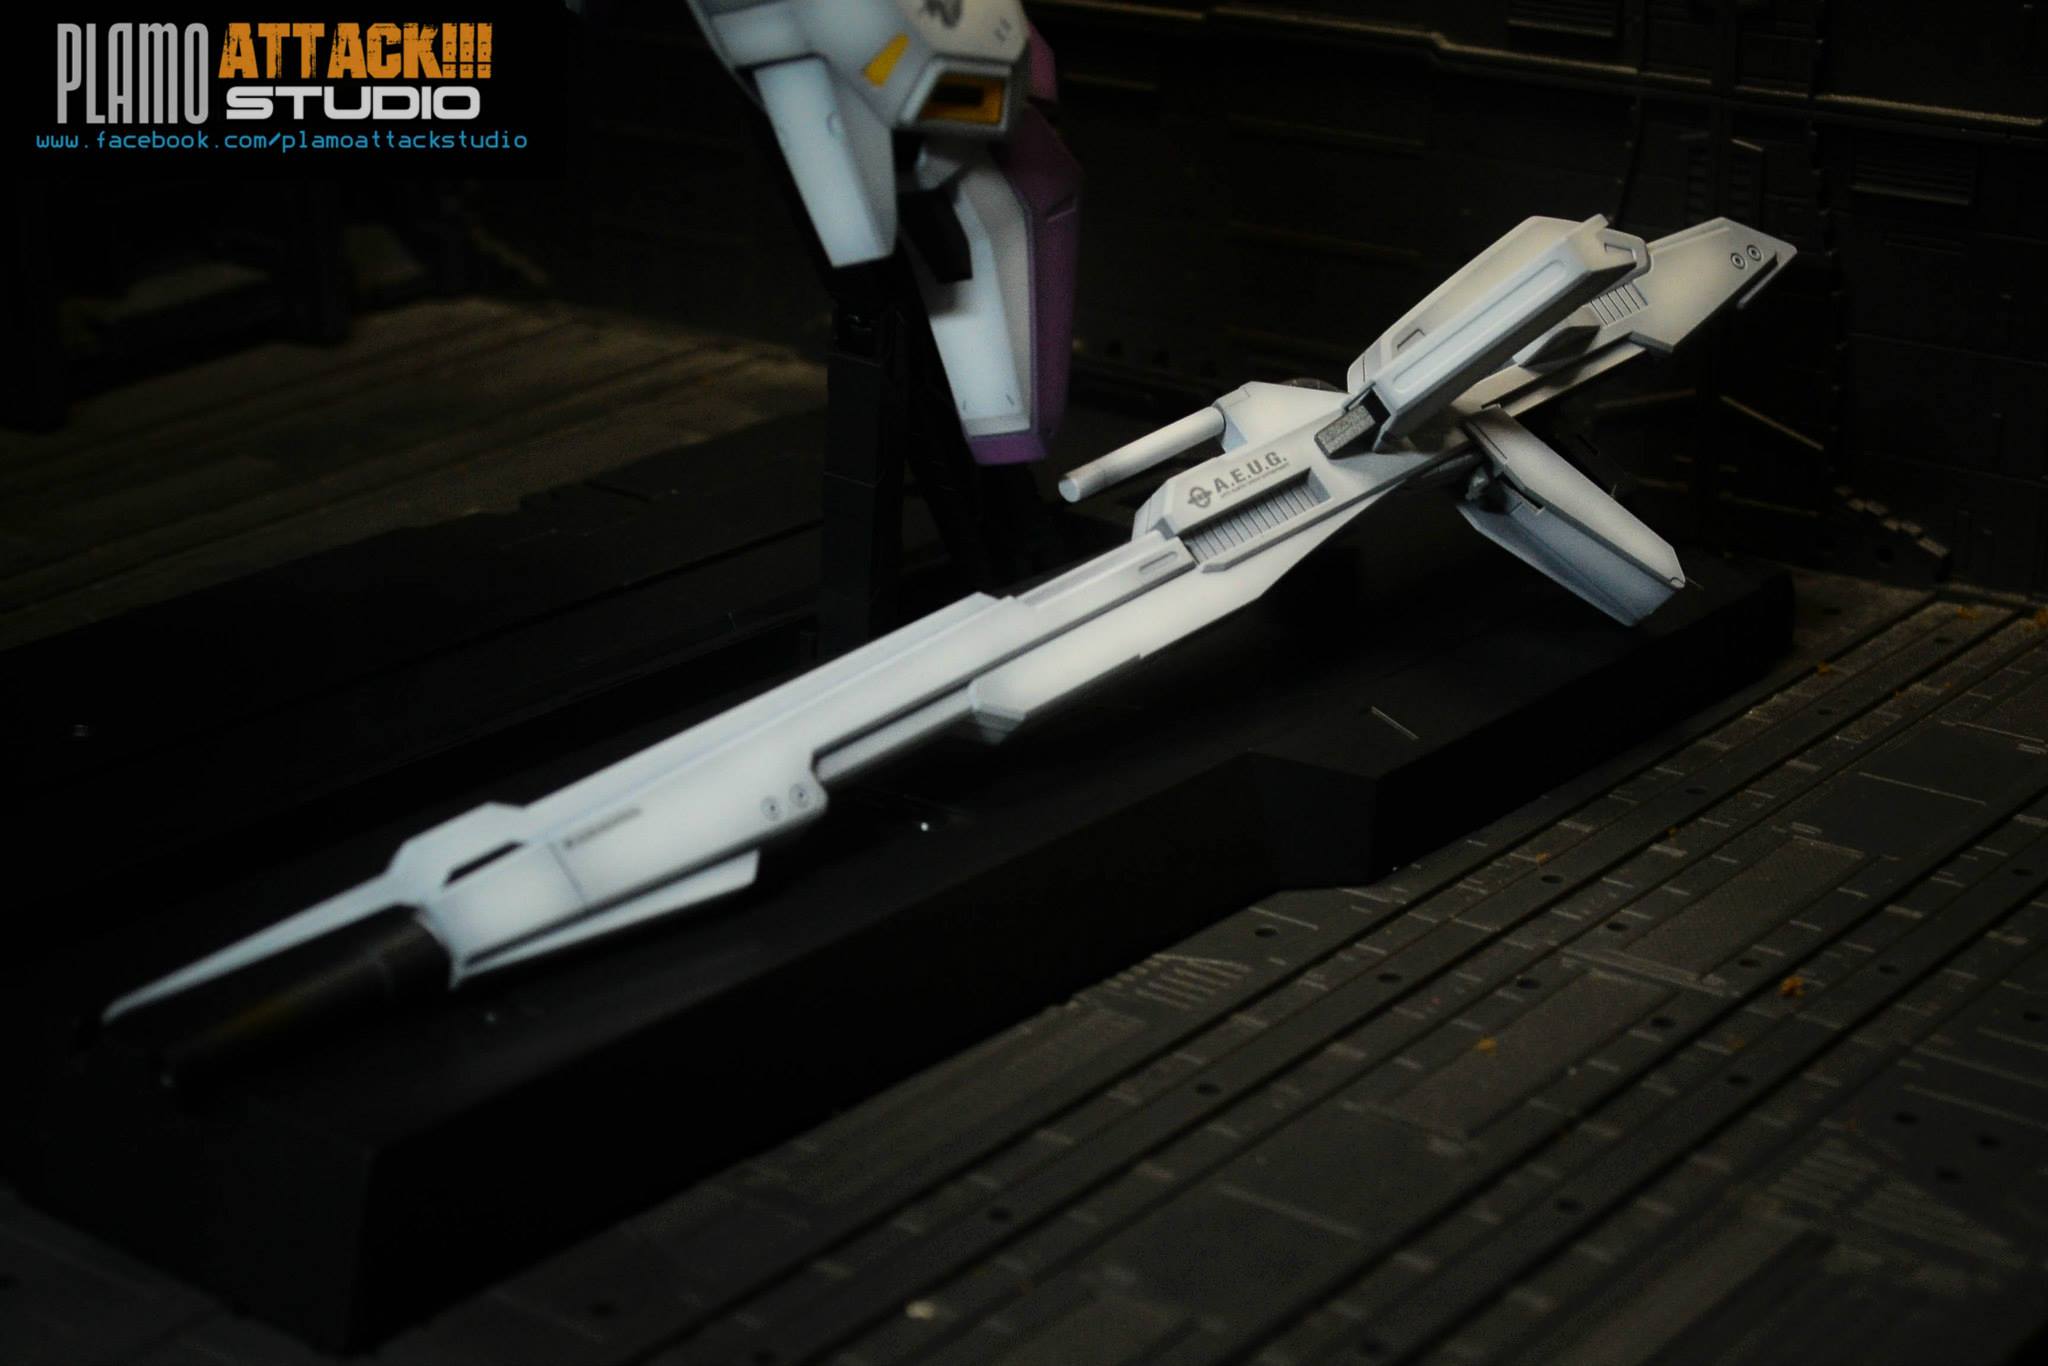 MG 1100 Zeta Karaba (White Unicorn Gundam EVOLVE)